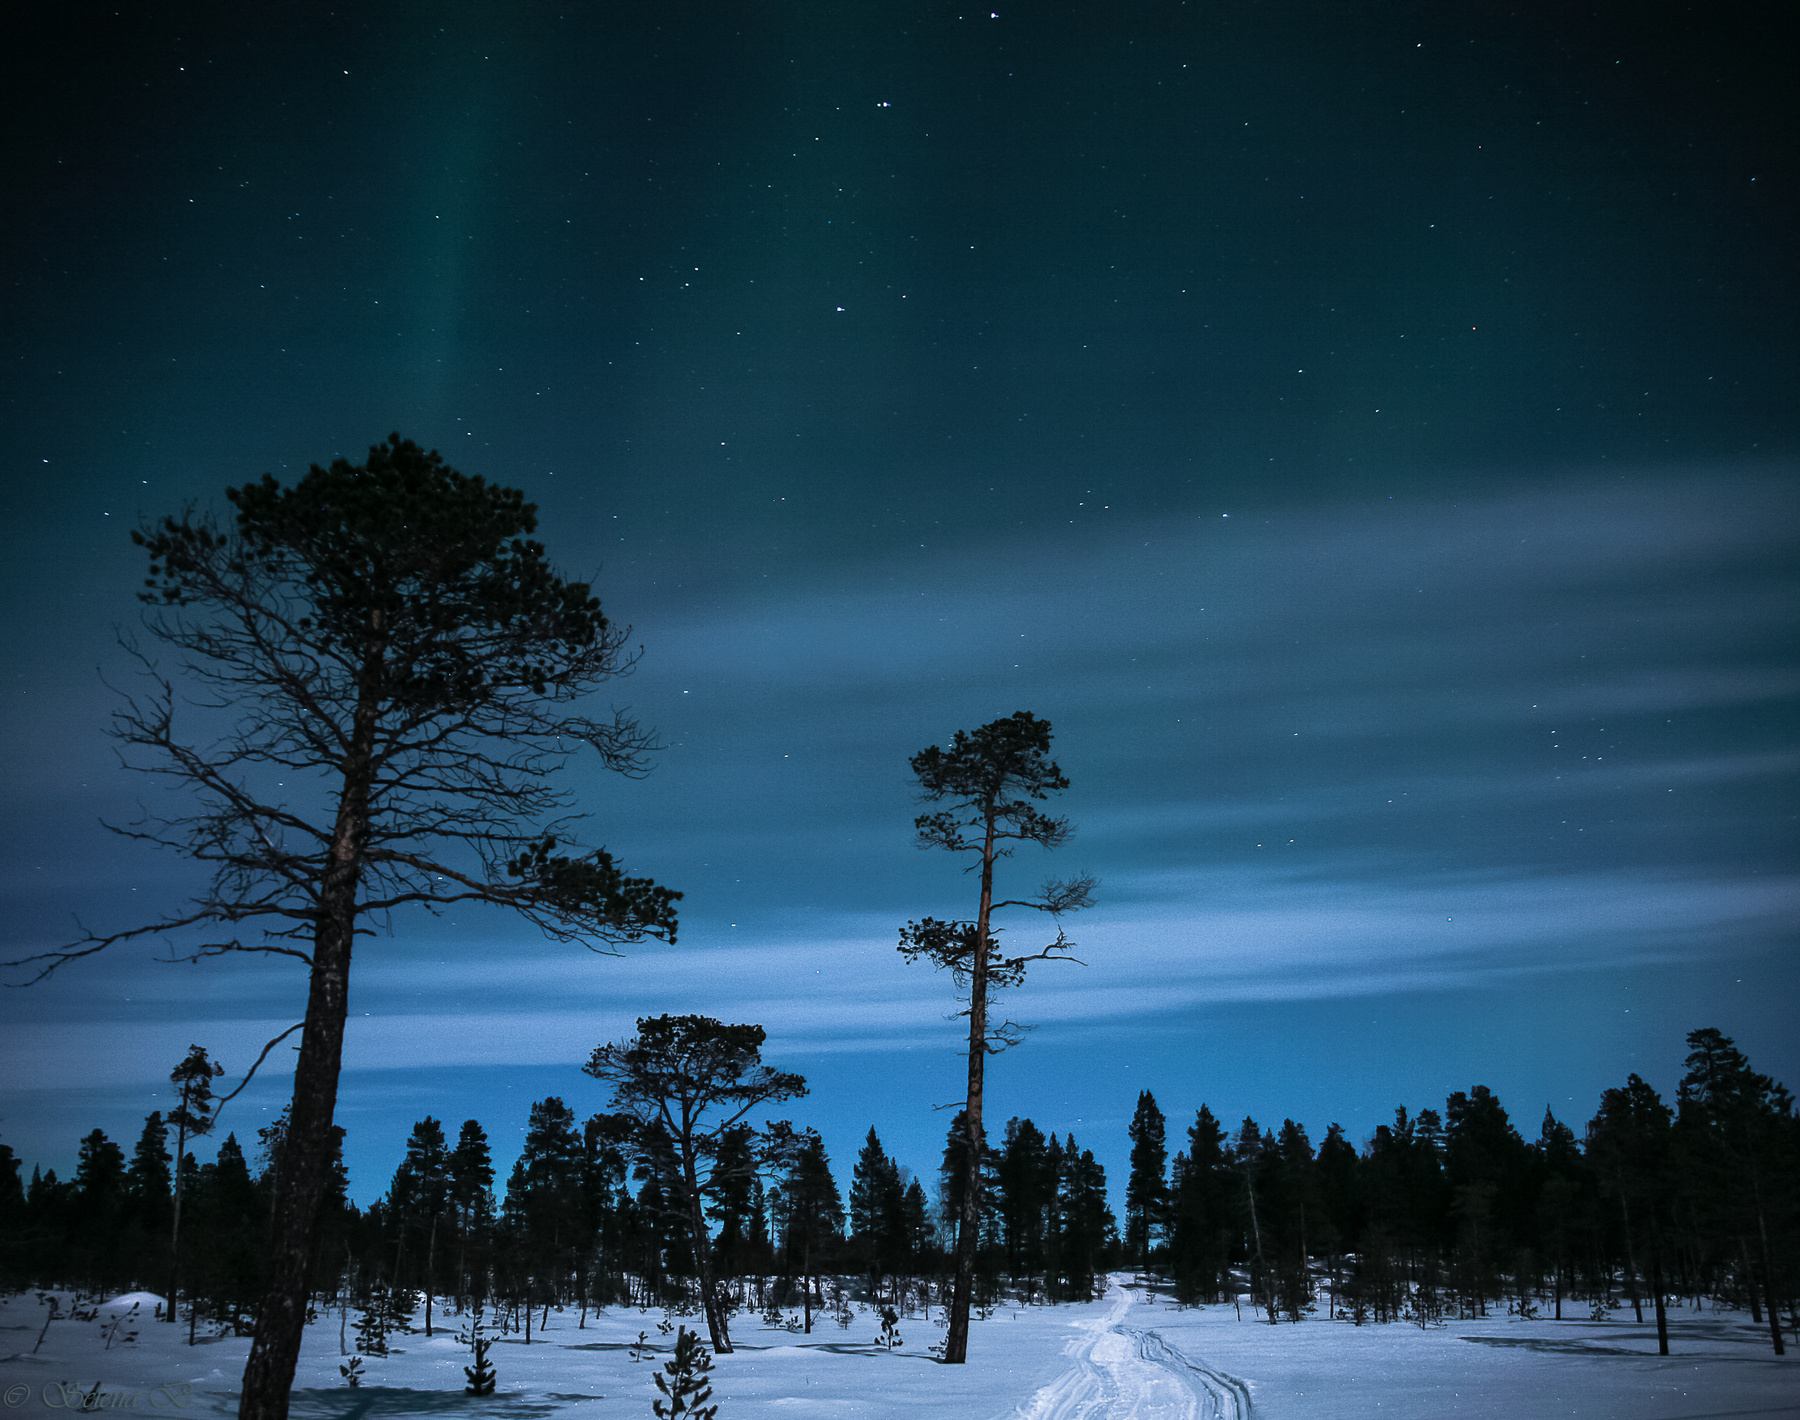 Полярная ночь #1 пейзаж север ночь аврора Инари Финляндия